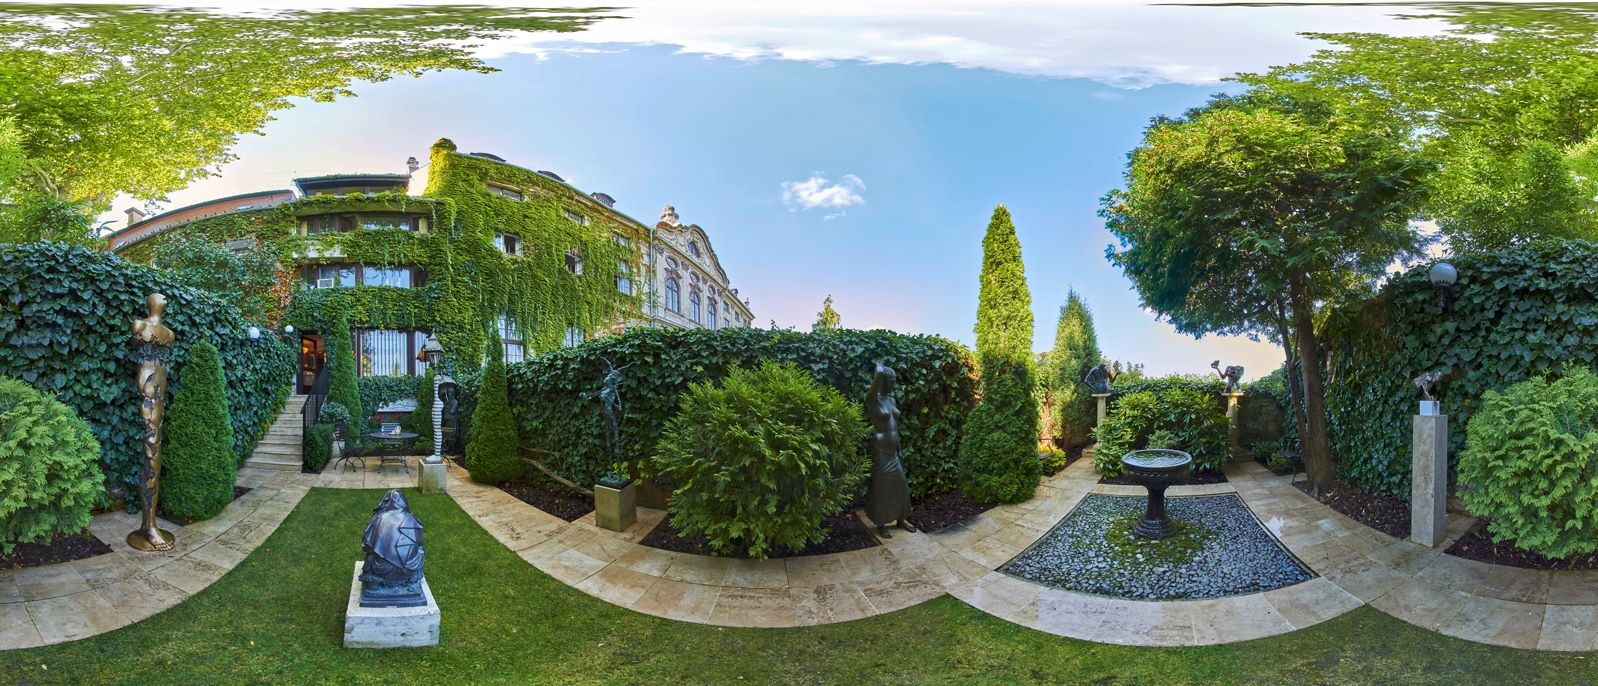 Koller garden Budapest